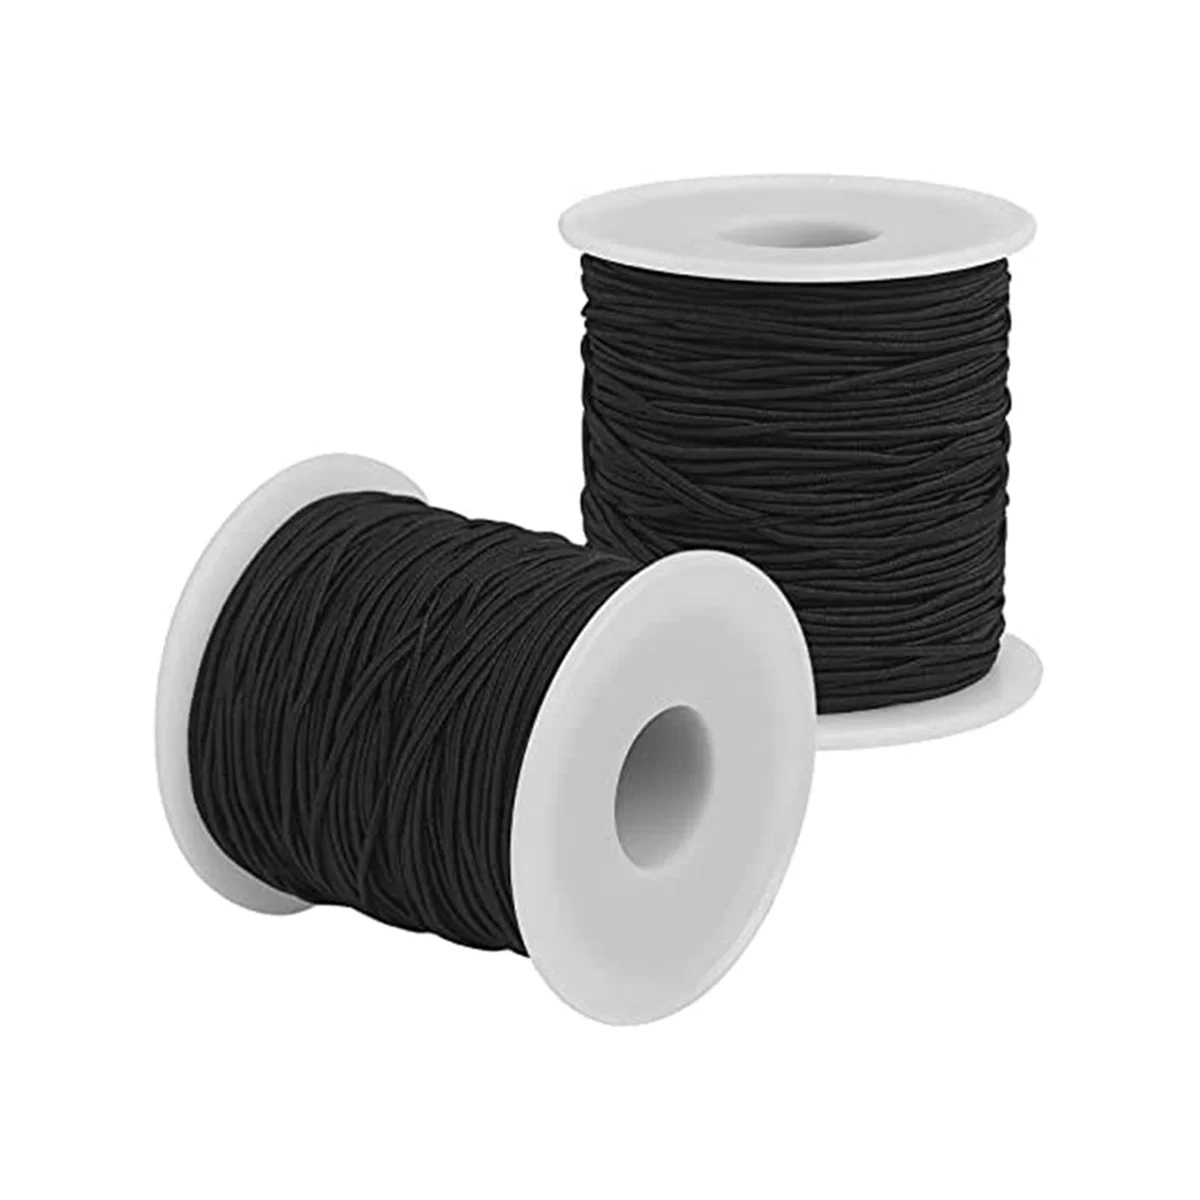 

Эластичная нить для изготовления браслетов-черный эластичный шнур 1,2 мм всего 109 ярдов, для изготовления ювелирных изделий, ожерелий, бисероплетения